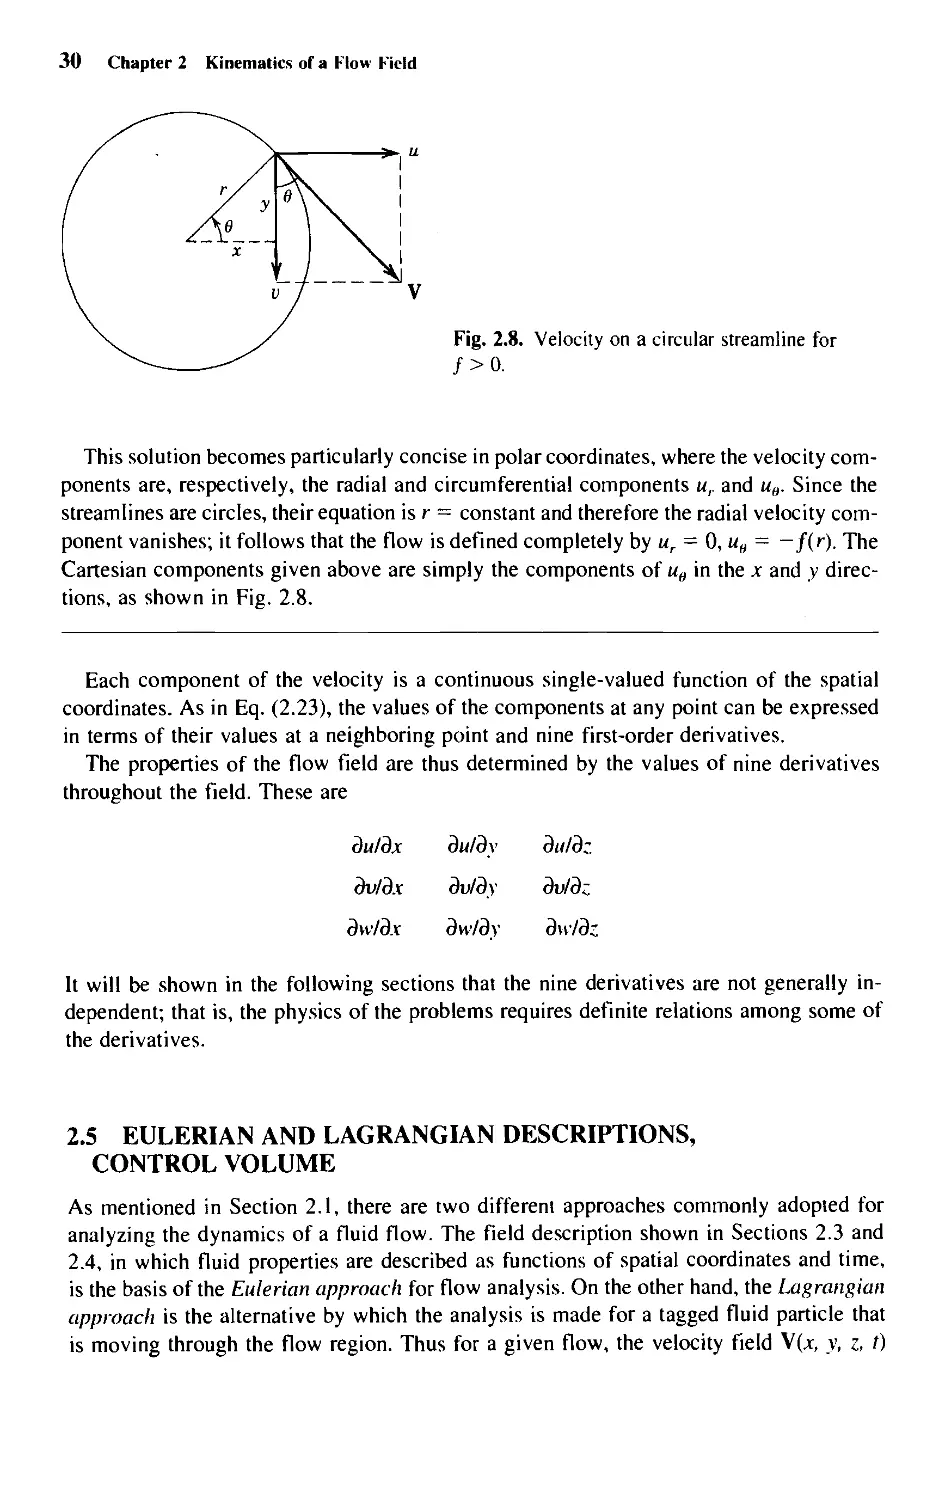 2.5 - Eulerian and Lagrangian Descriptions, Control Volume